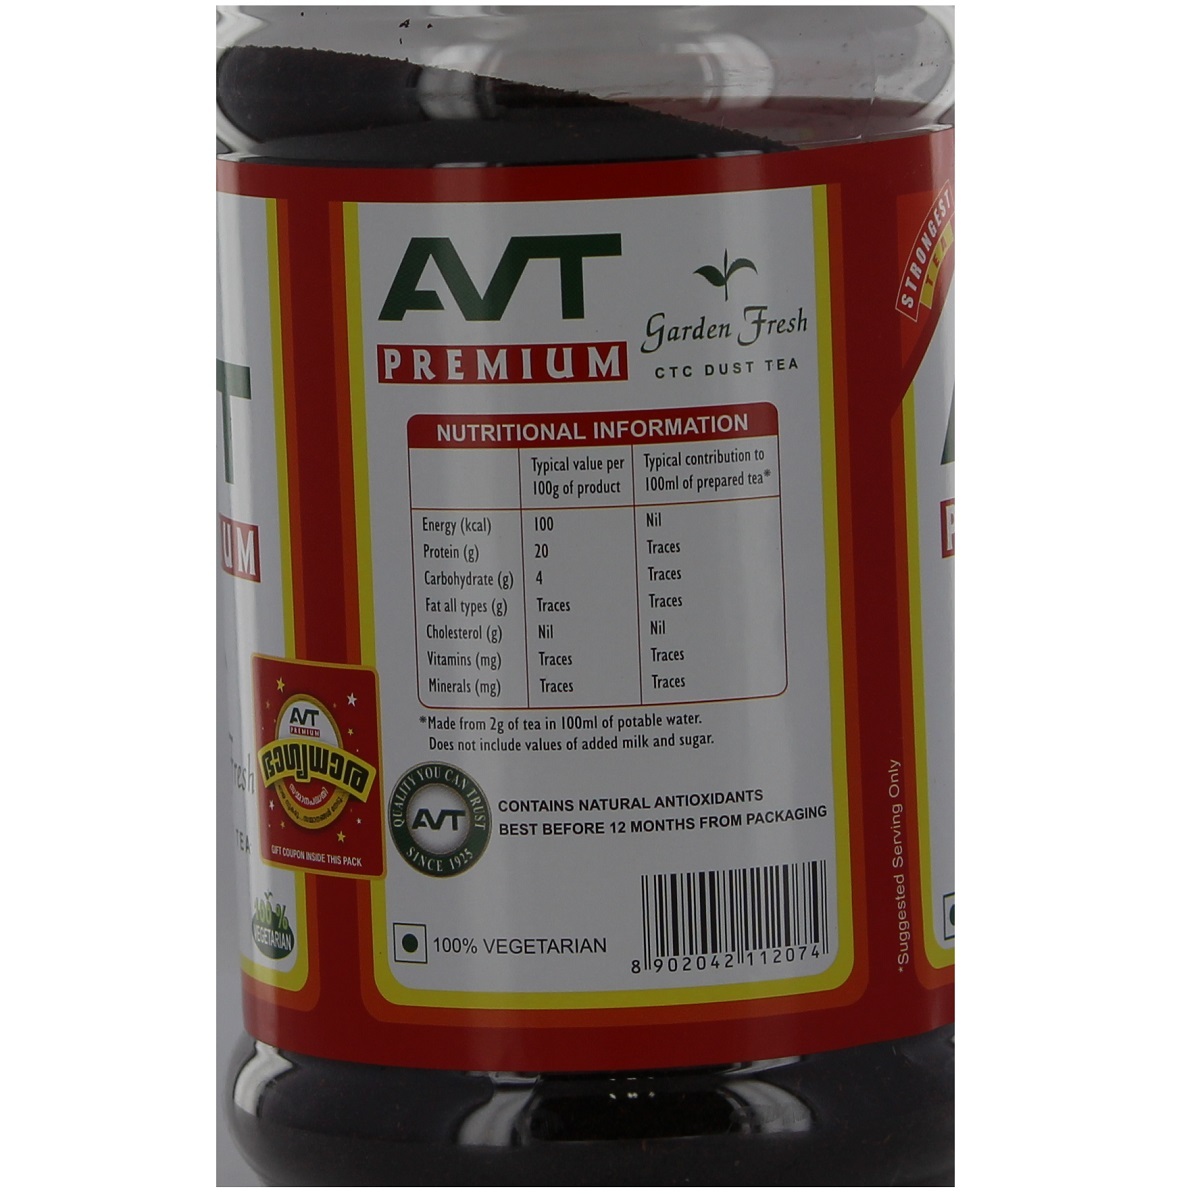 AVT Premium CTC Dust Tea Jar 500g